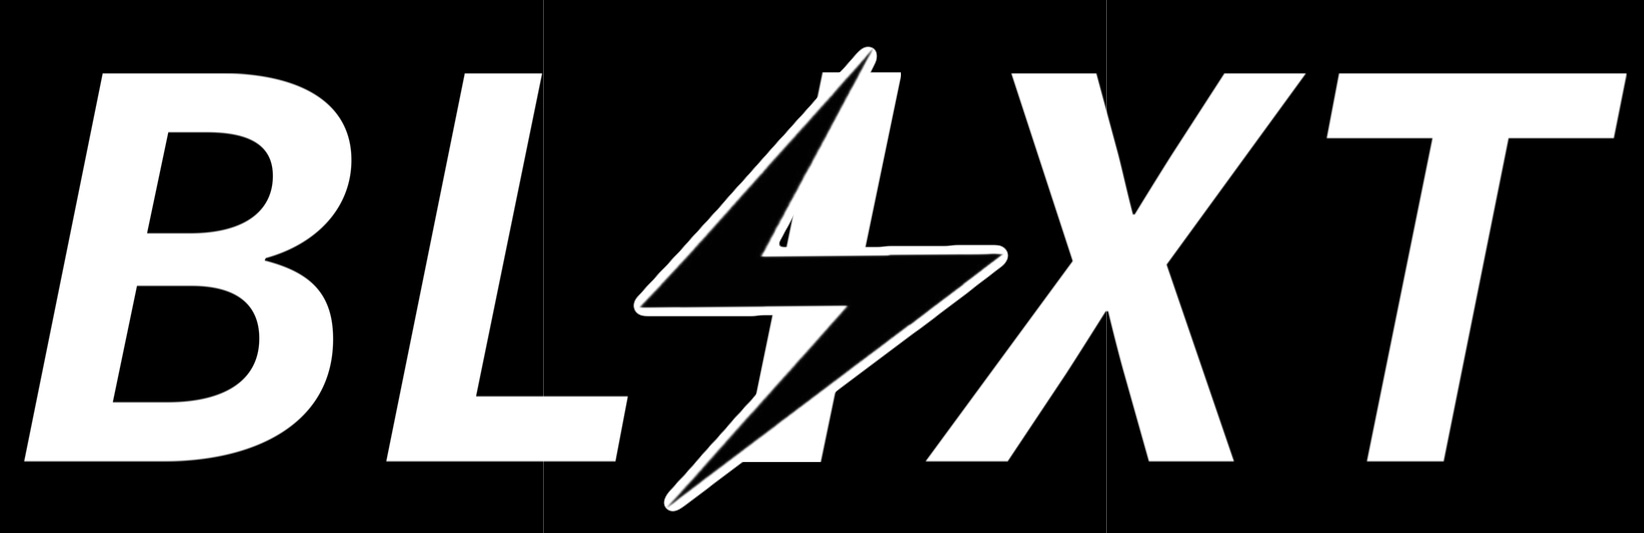 blixt logo